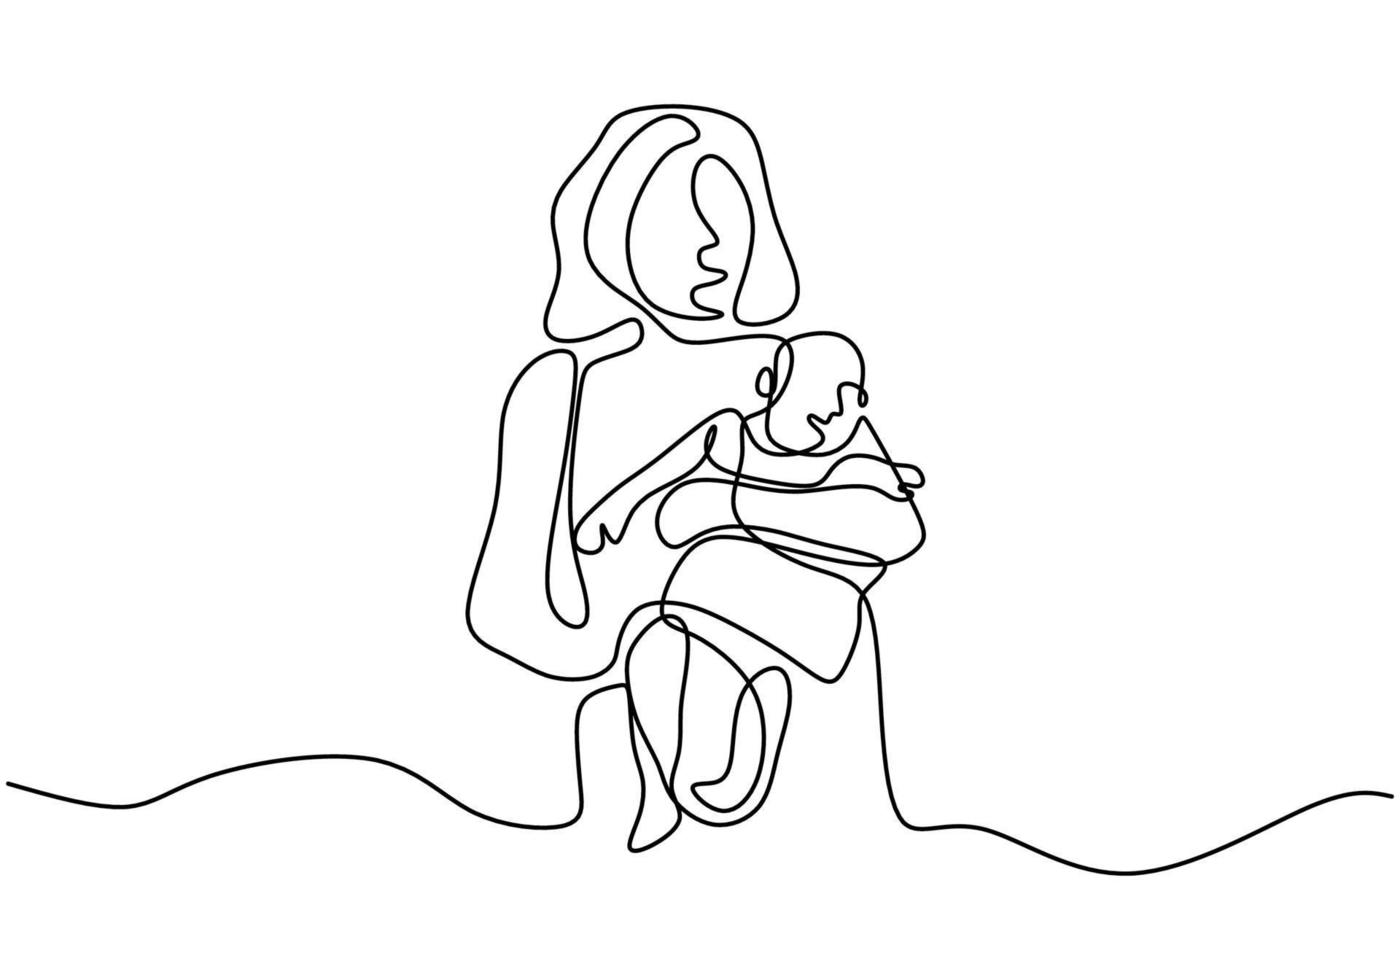 continu een lijntekening van een vrouw die haar baby vasthoudt. gelukkige moederdag kaart. jonge mooie moeder koestert haar kind met haar liefde geïsoleerd op een witte achtergrond. vector illustratie